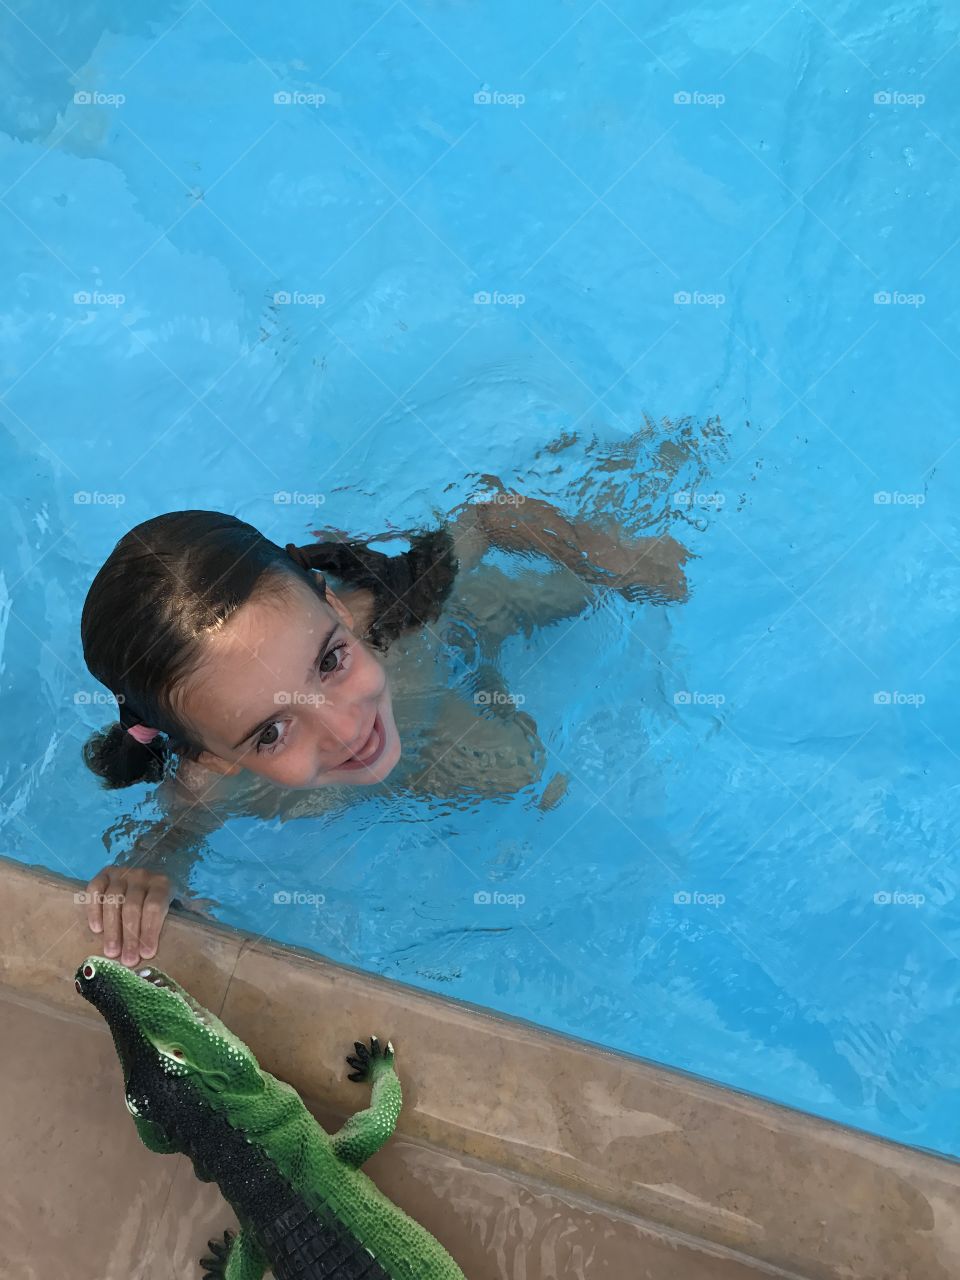 Little girl in a pool